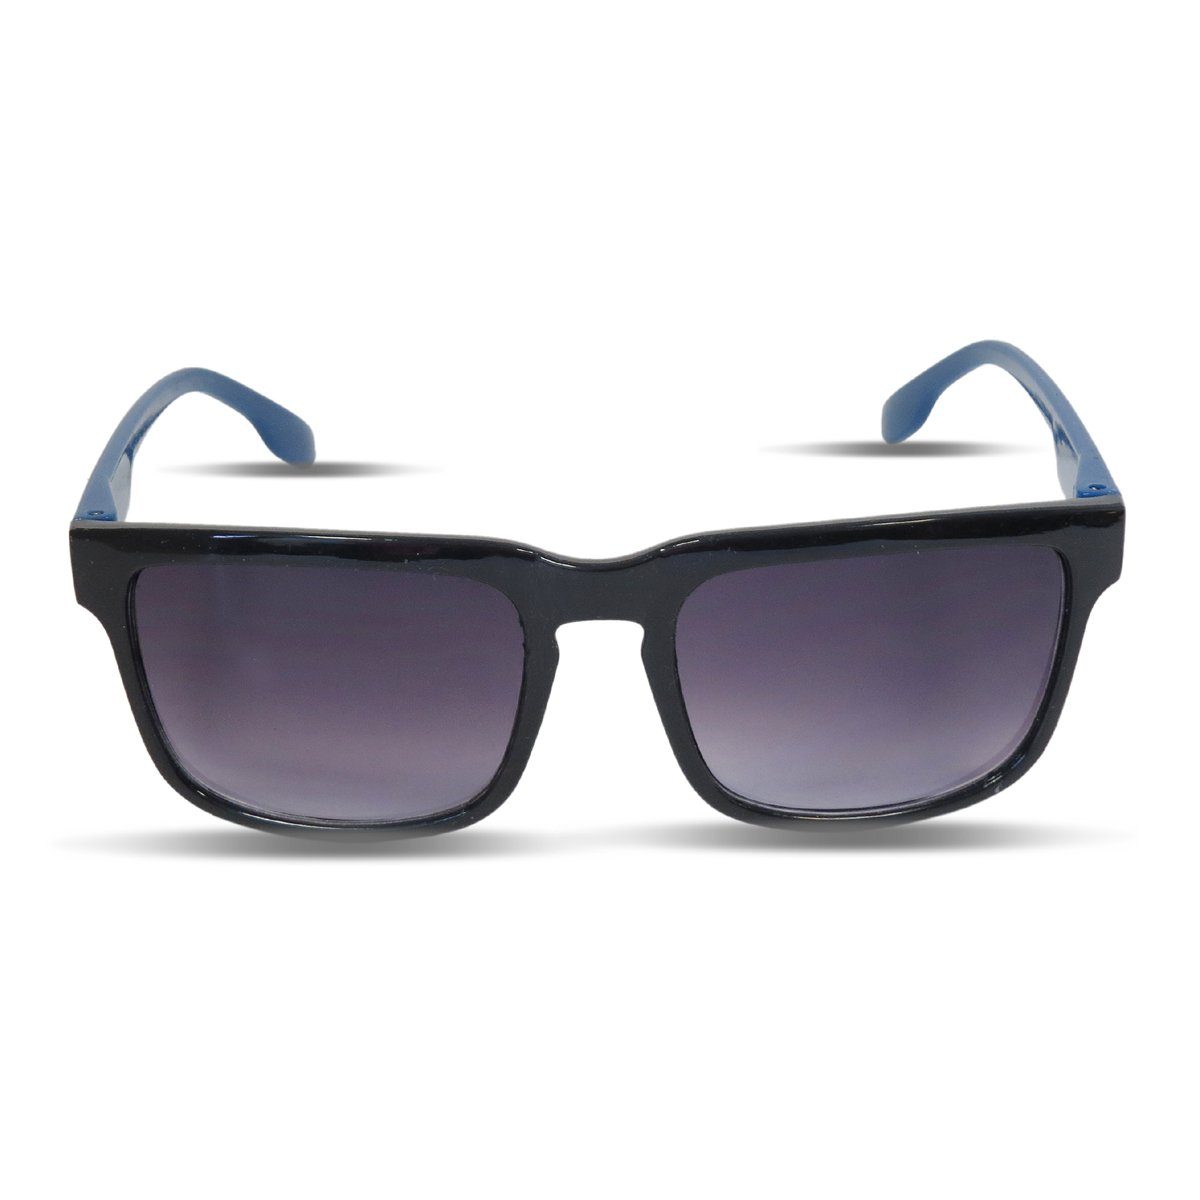 Sonia Originelli Sonnenbrille Sonnenbrille verspiegelt Party Klassik Wayfarer onesize blau | Sonnenbrillen